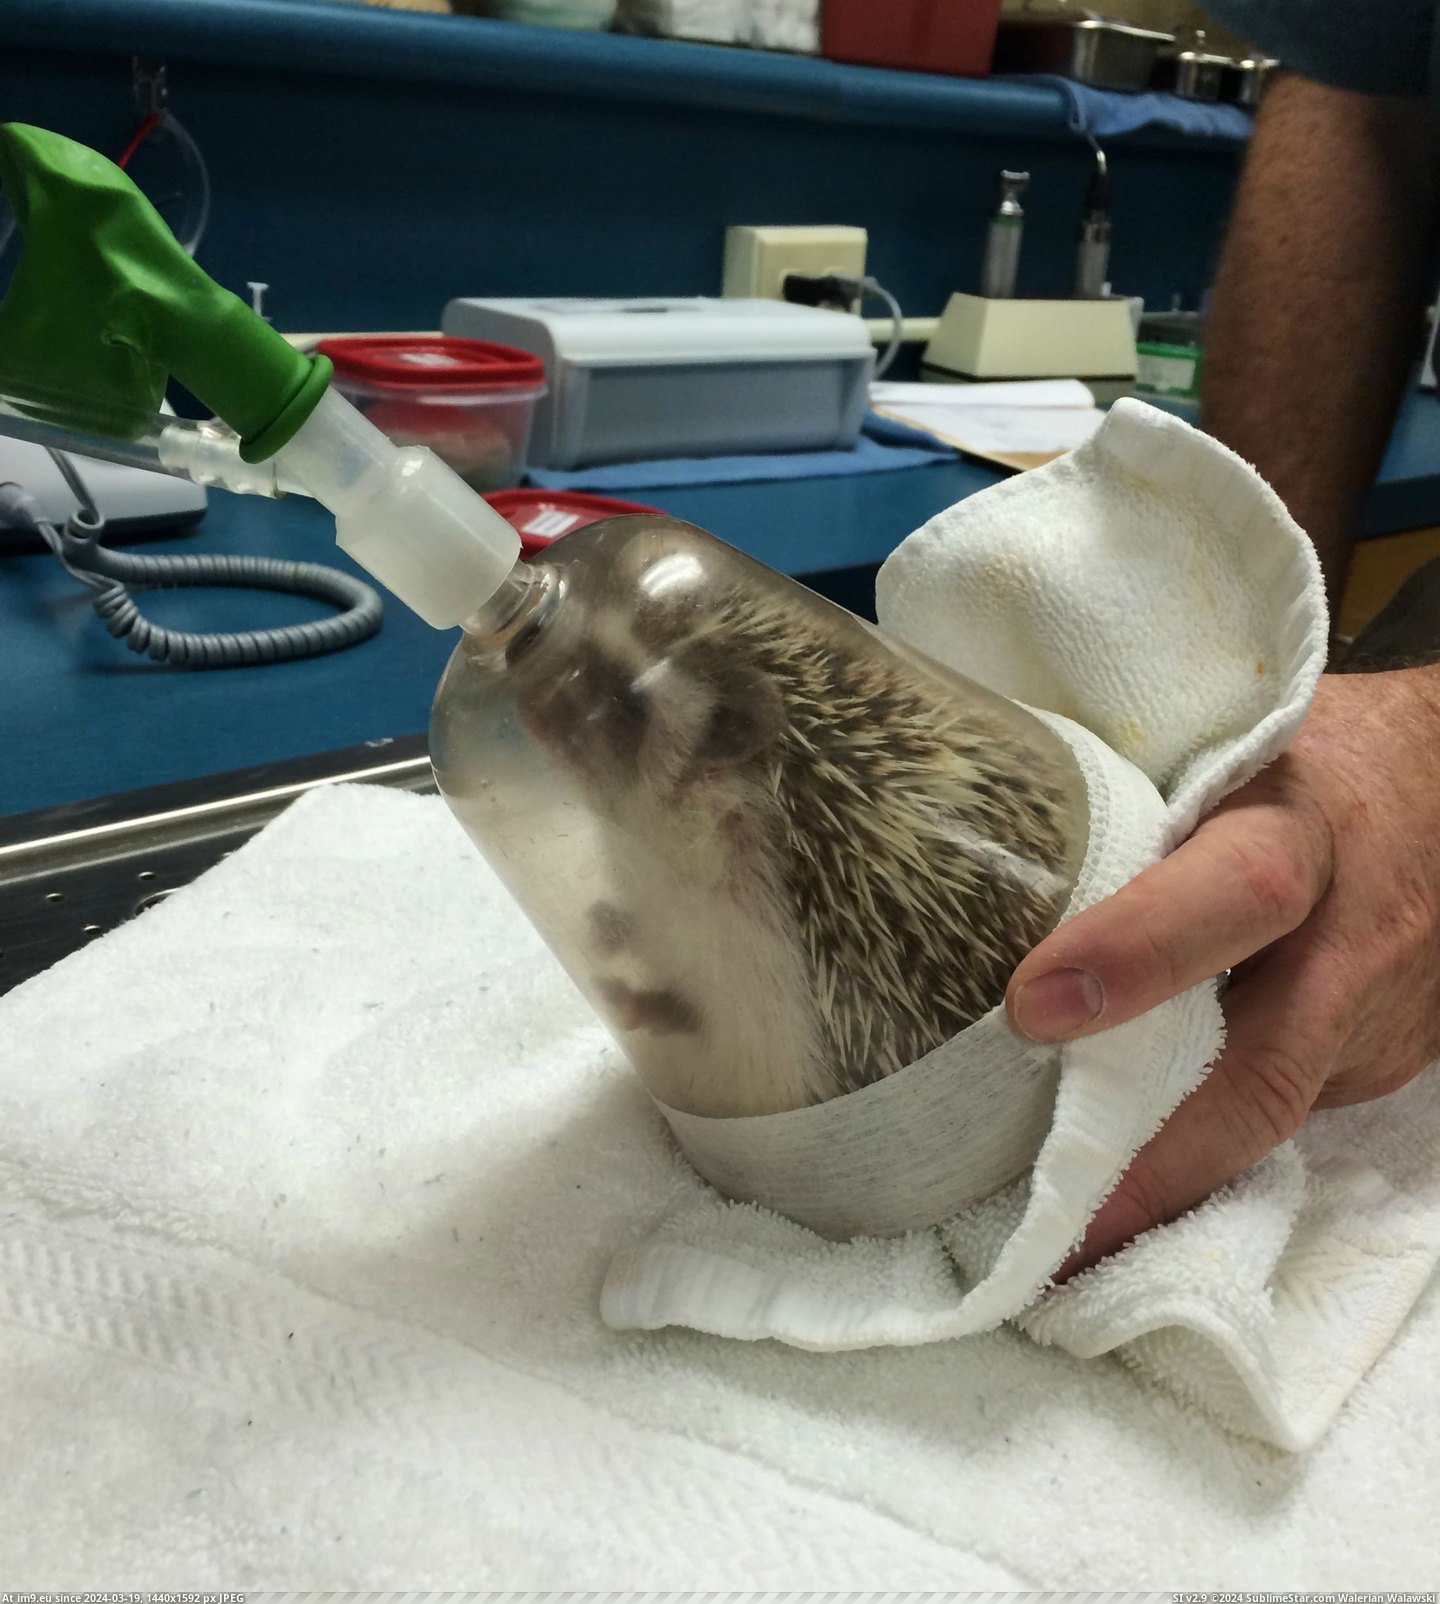 #Album #Oral #Anesthesia #Hedgehog #Exam [Aww] My hedgehog just had anesthesia for an oral exam [album] 9 Pic. (Изображение из альбом My r/AWW favs))